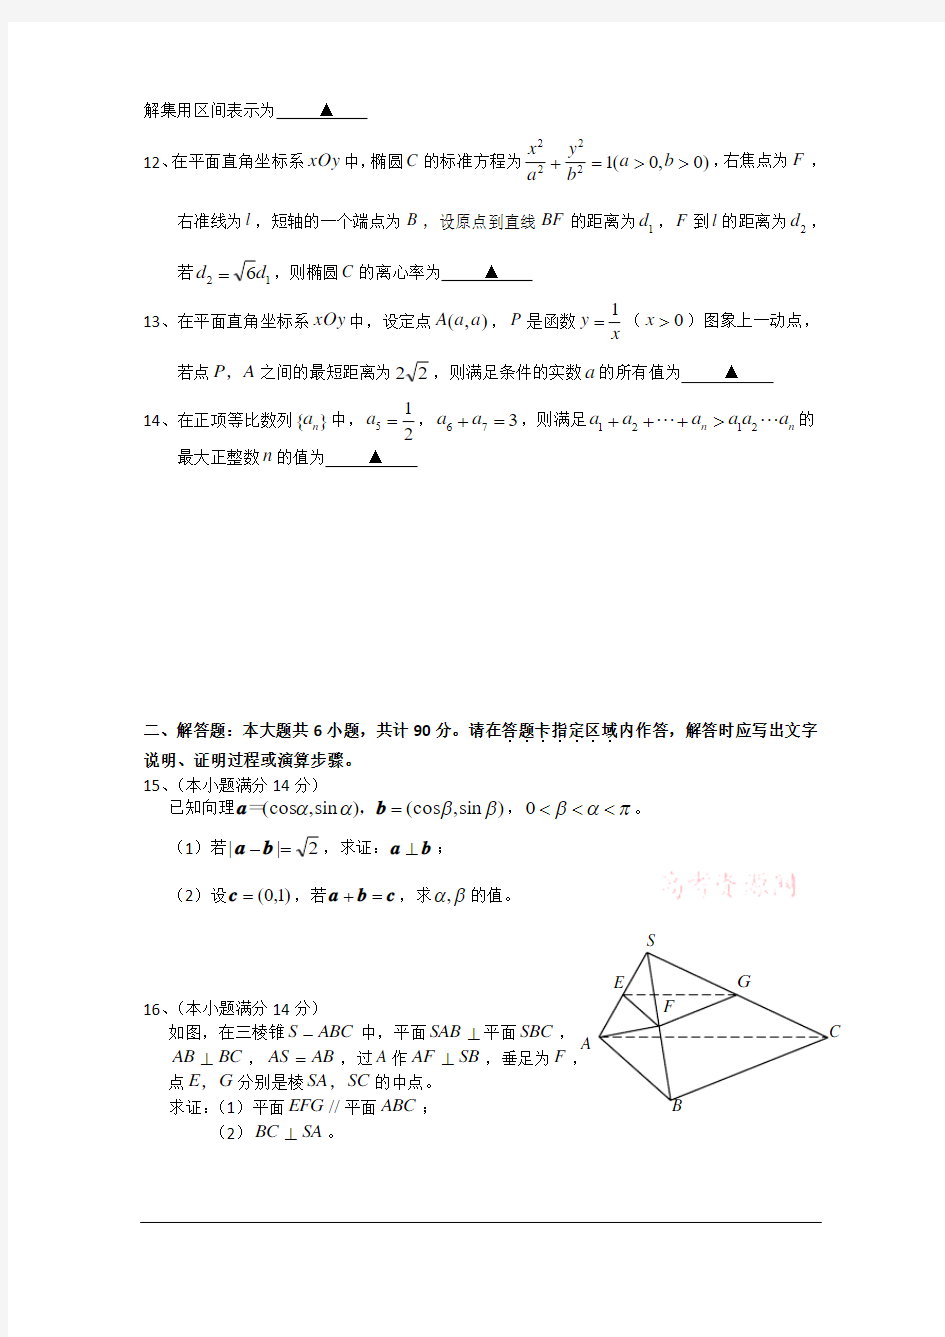 2013年高考真题——数学(江苏卷)